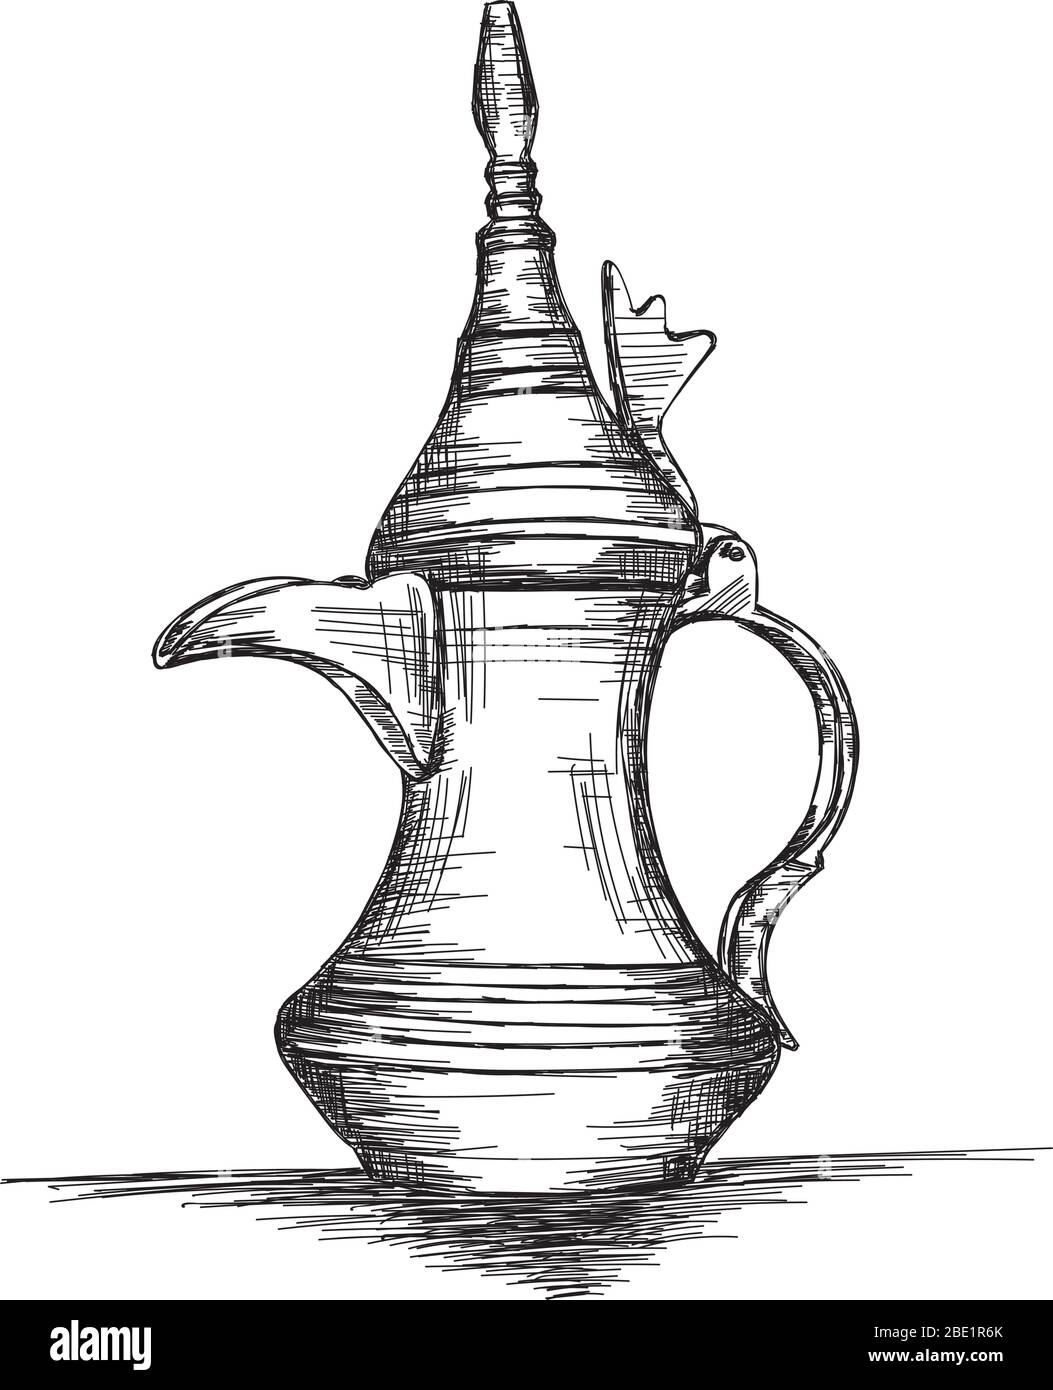 Culture du Moyen-Orient Dallah - Illustration vectorielle de la cafetière arabe Illustration de Vecteur